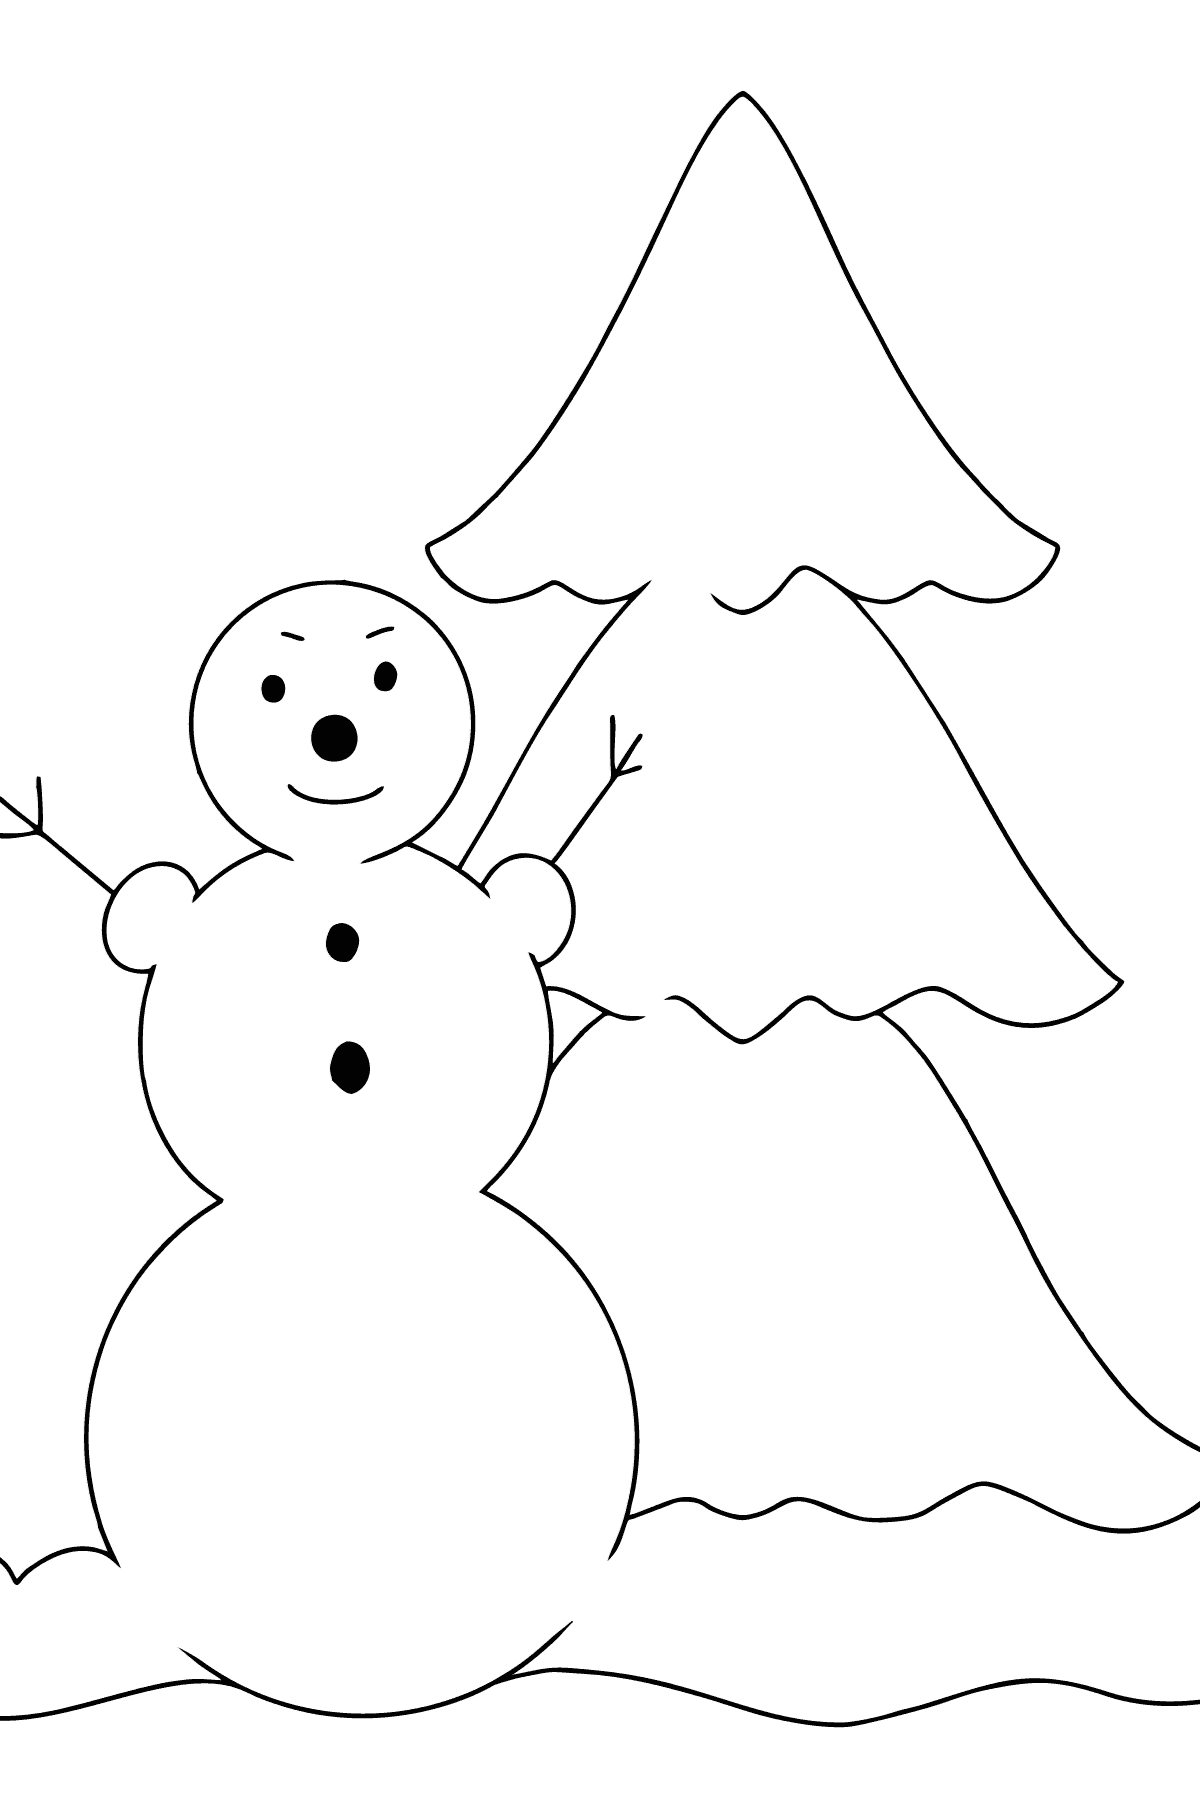 Простая картинка раскраска снеговик - Картинки для Детей